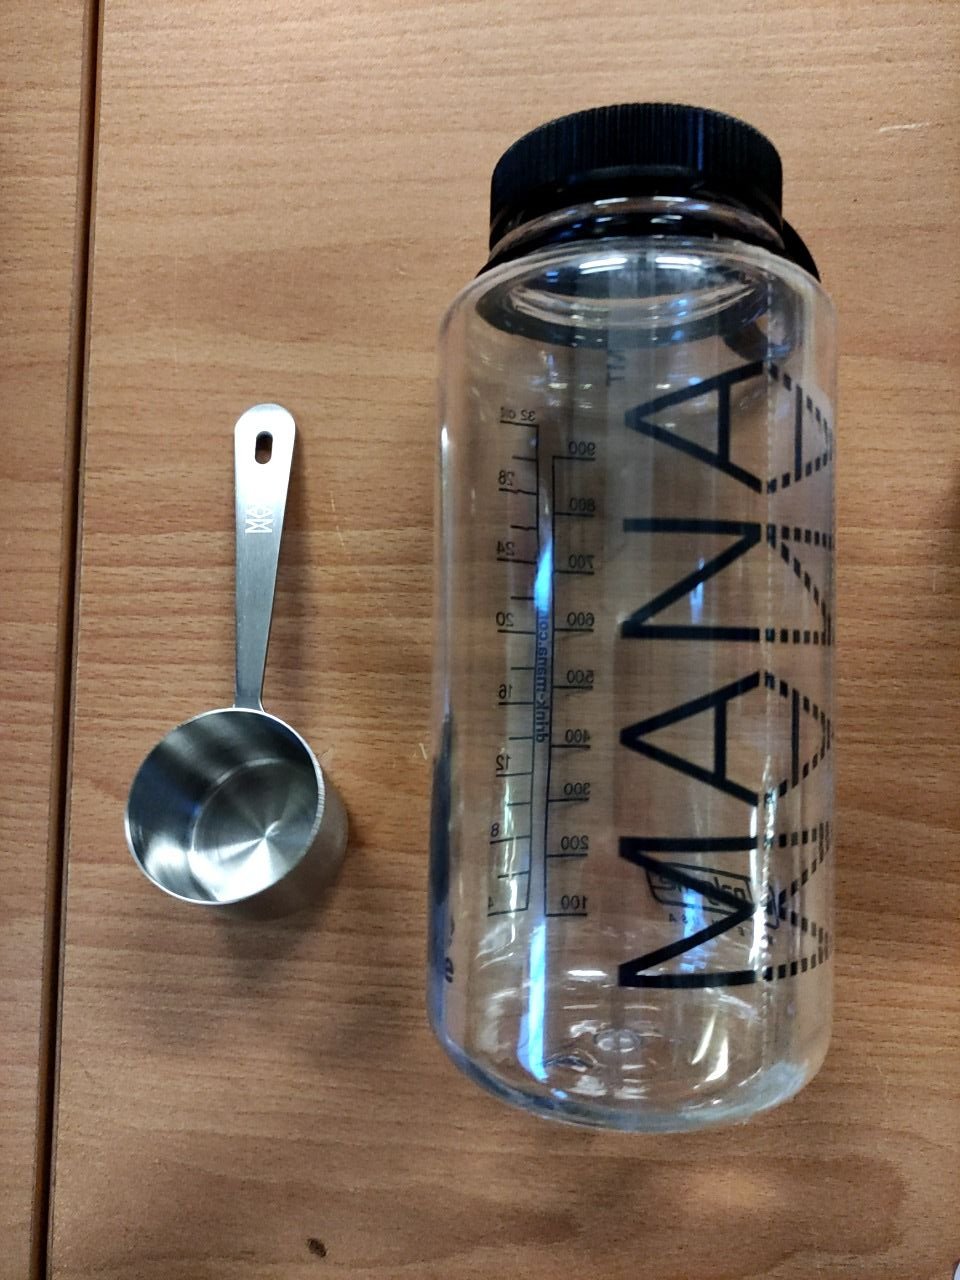 Startovací set pro tvorbu nápojů Mana - obsahuje láhev o objemu 1l a nerezovou odměrku Mana 